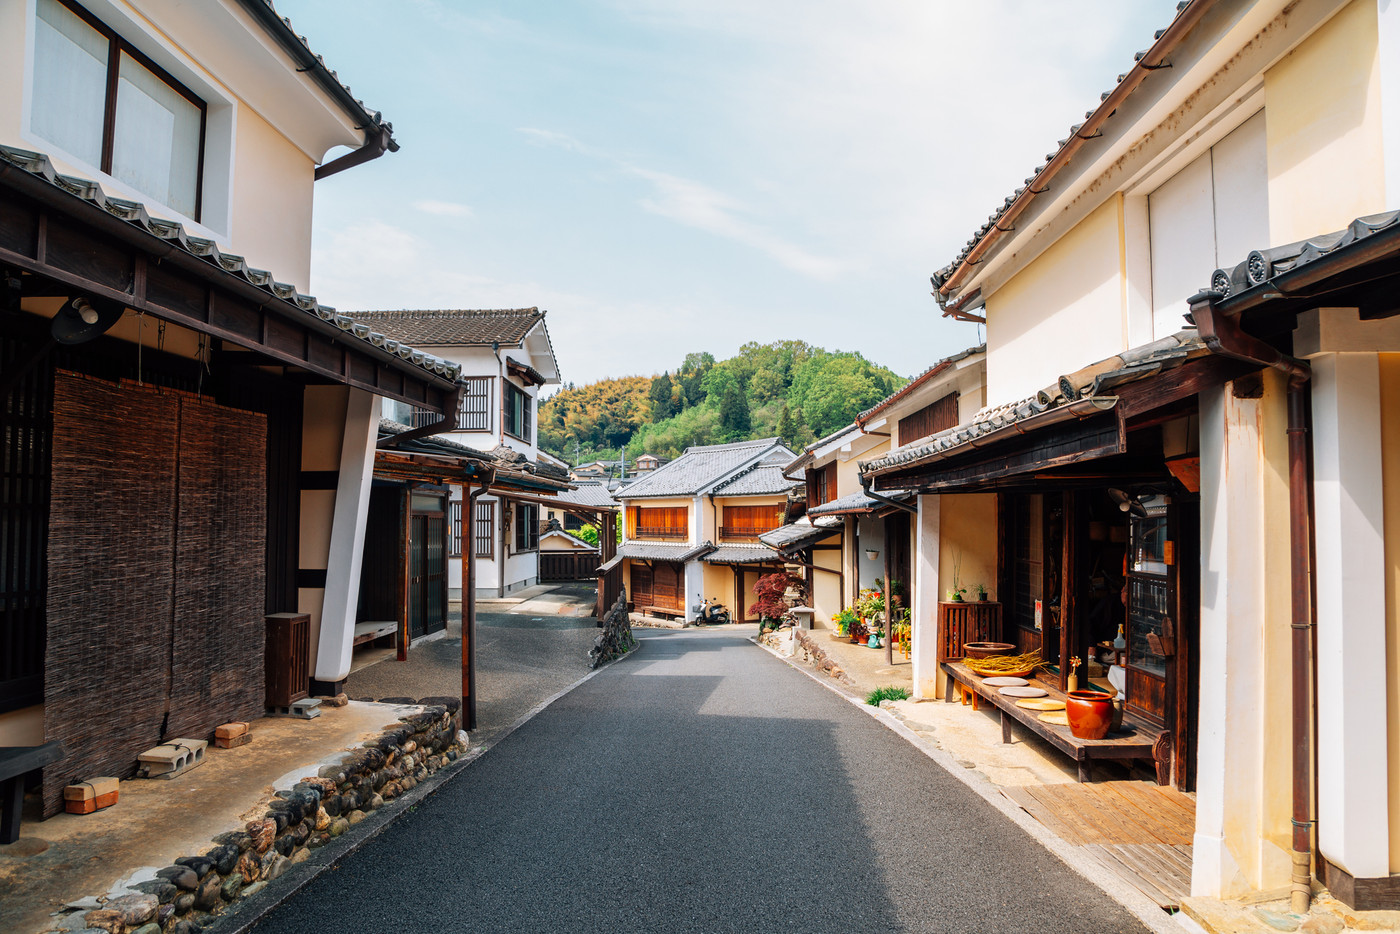 Japanese old traditional village Uchiko town in Ehime, Shikoku, Japan